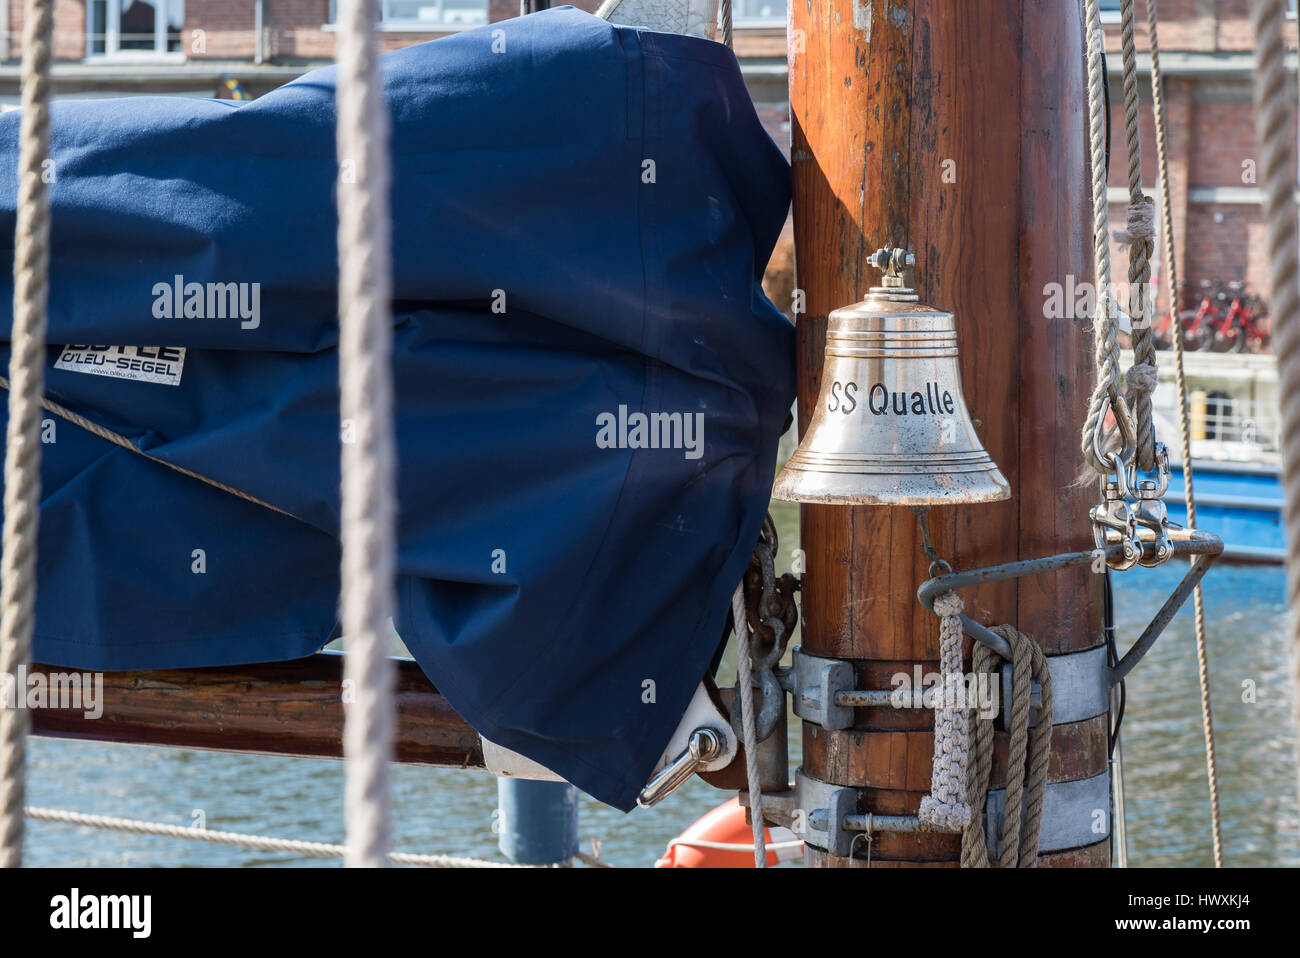 Wismar,Hansestadt,ship's bell, ss qualle, Stock Photo